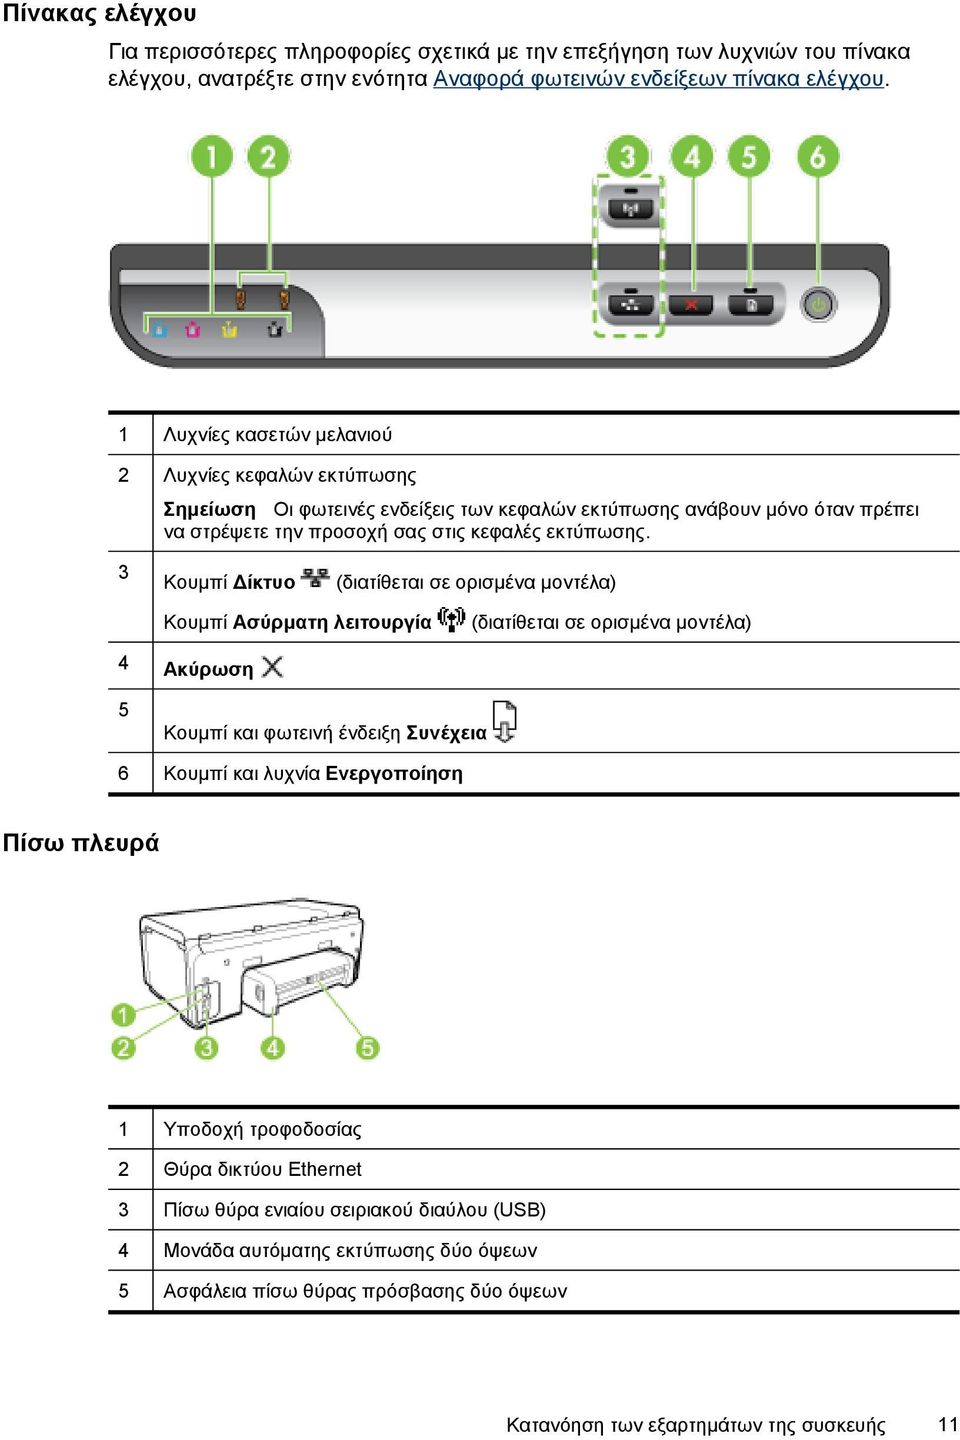 3 Κουμπί Δίκτυο (διατίθεται σε ορισμένα μοντέλα) Κουμπί Ασύρματη λειτουργία (διατίθεται σε ορισμένα μοντέλα) 4 Ακύρωση 5 Κουμπί και φωτεινή ένδειξη Συνέχεια 6 Κουμπί και λυχνία Ενεργοποίηση